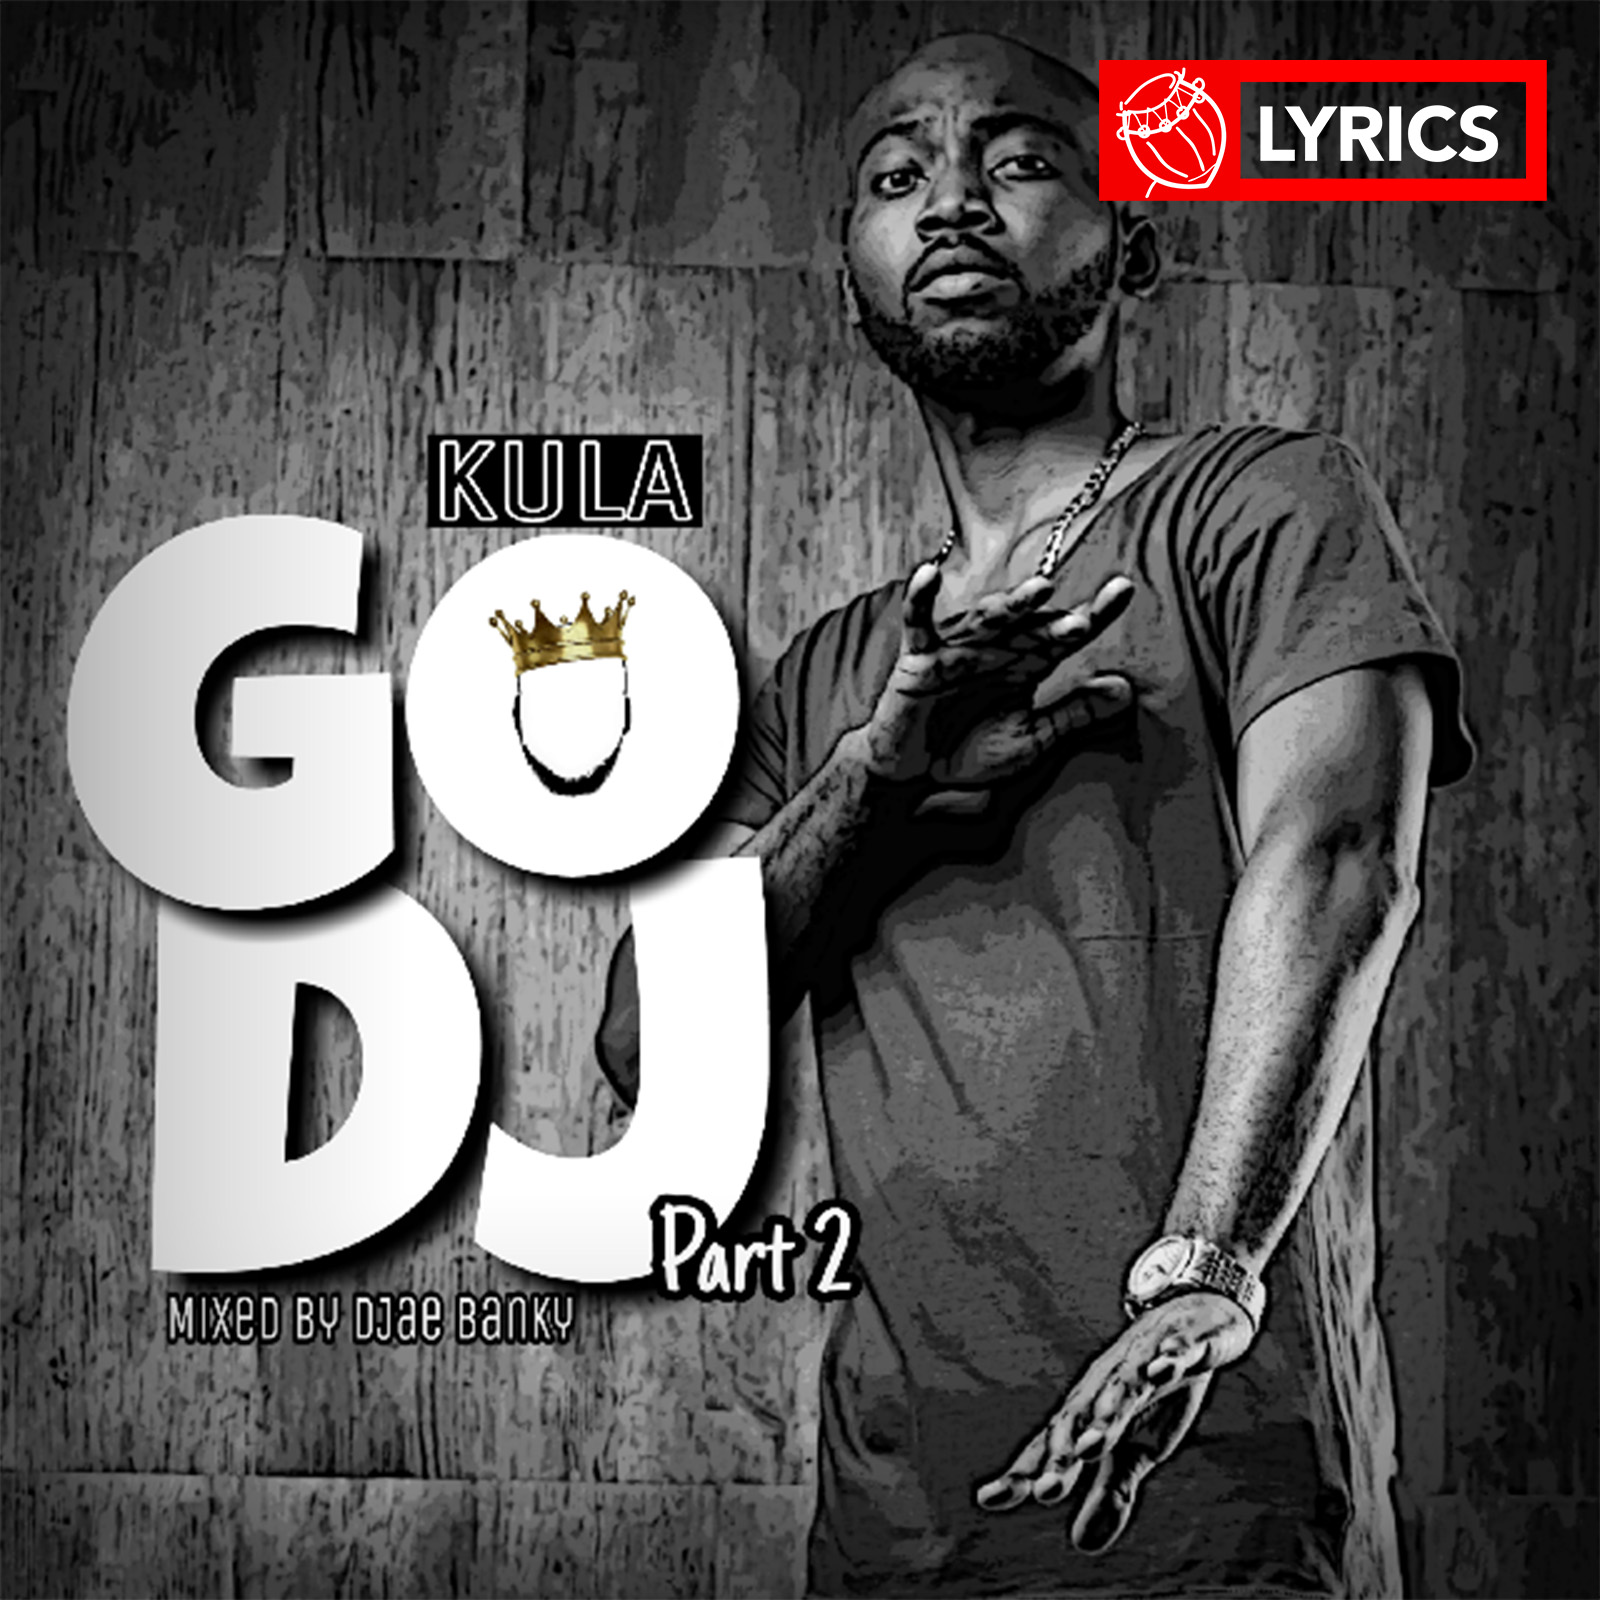 Lyrics: Go DJ part2 by Kula